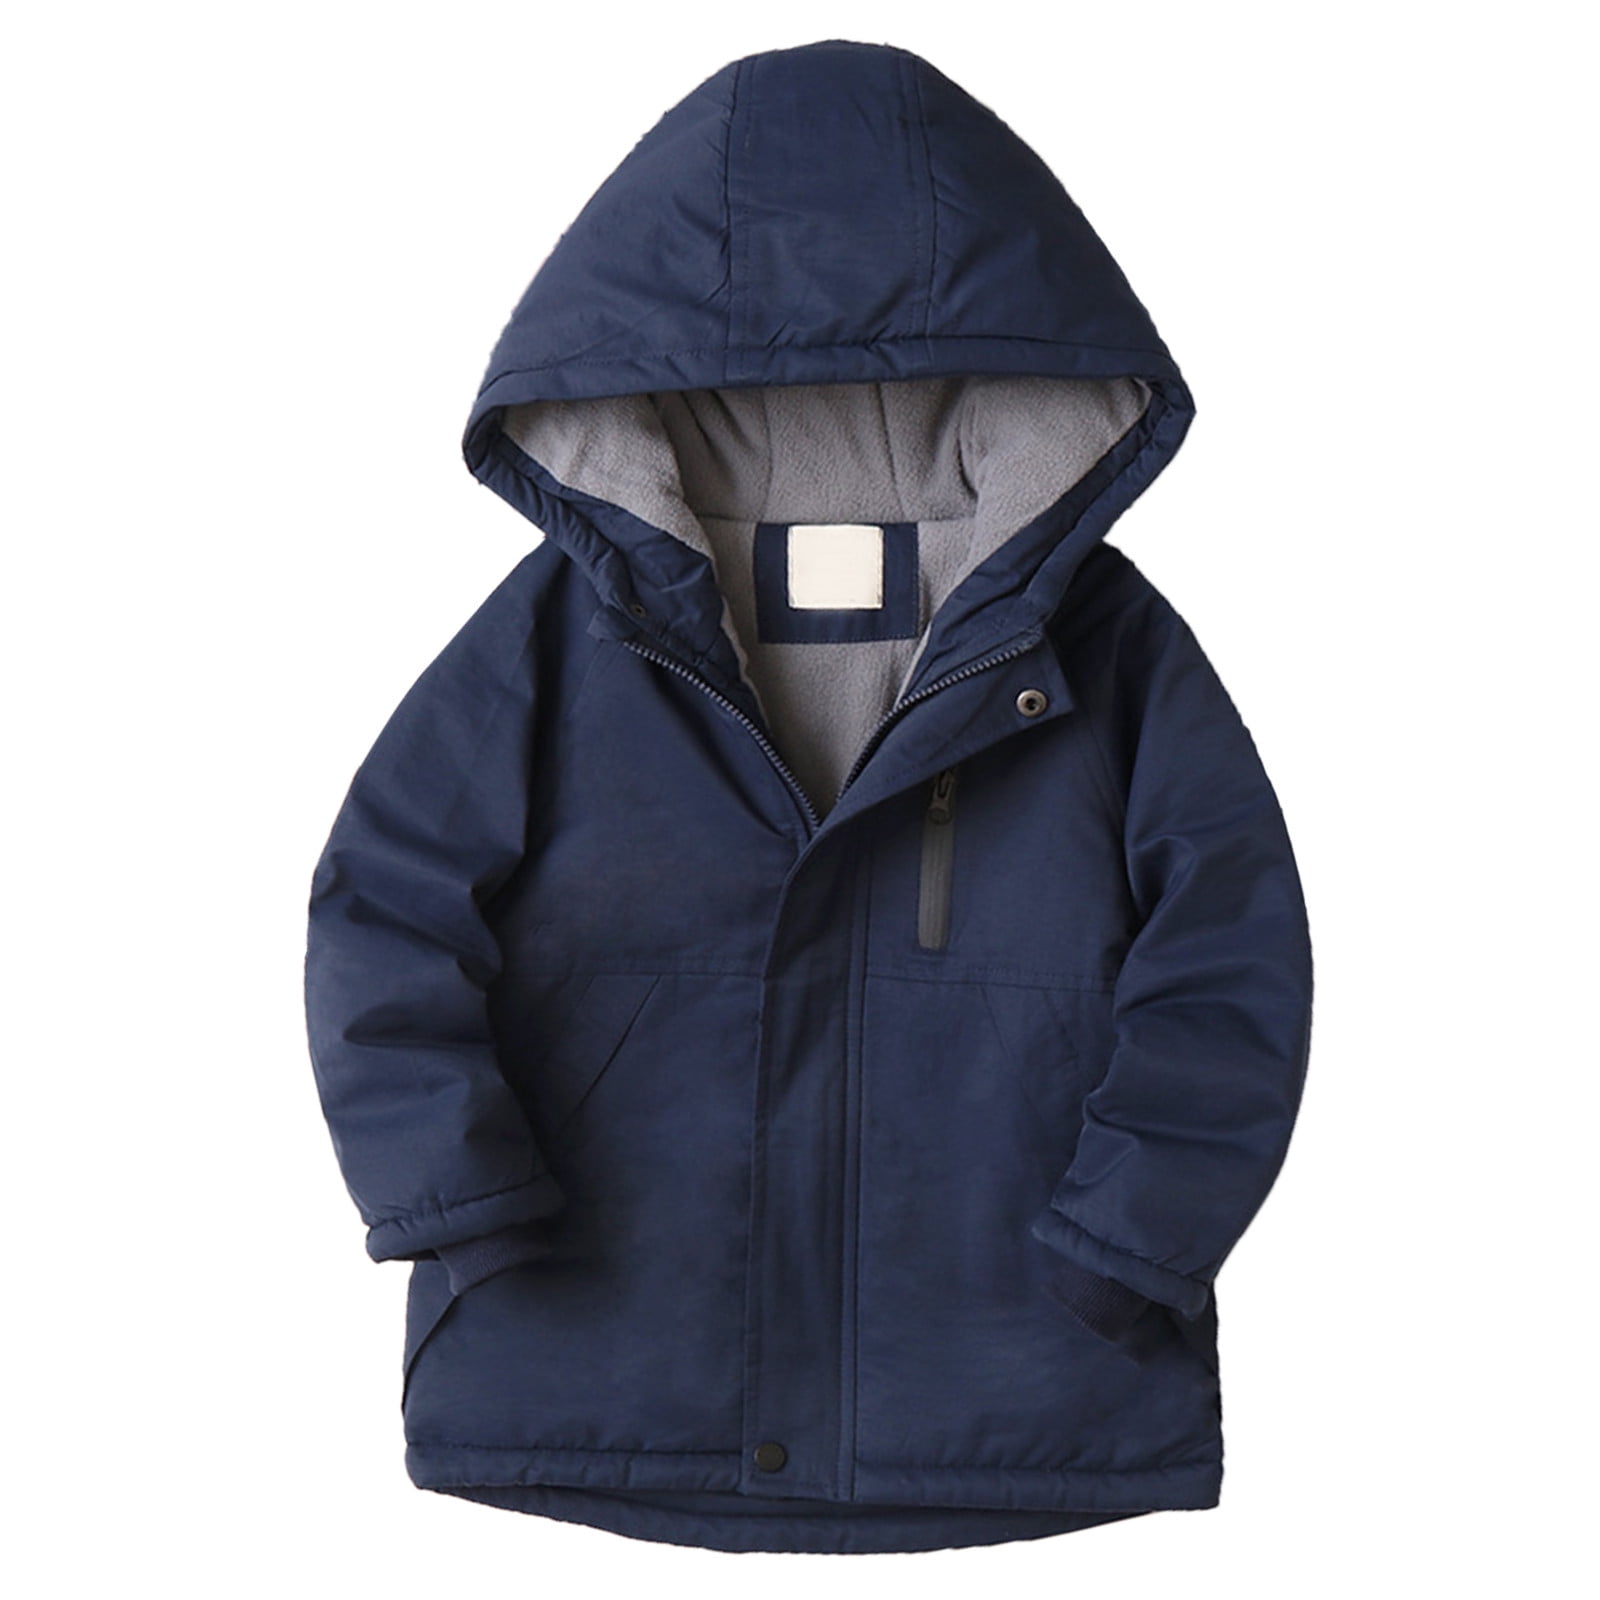 adviicd Boys' Outerwear Jackets & Coats Boys Size 8 Winter Coat Kids ...